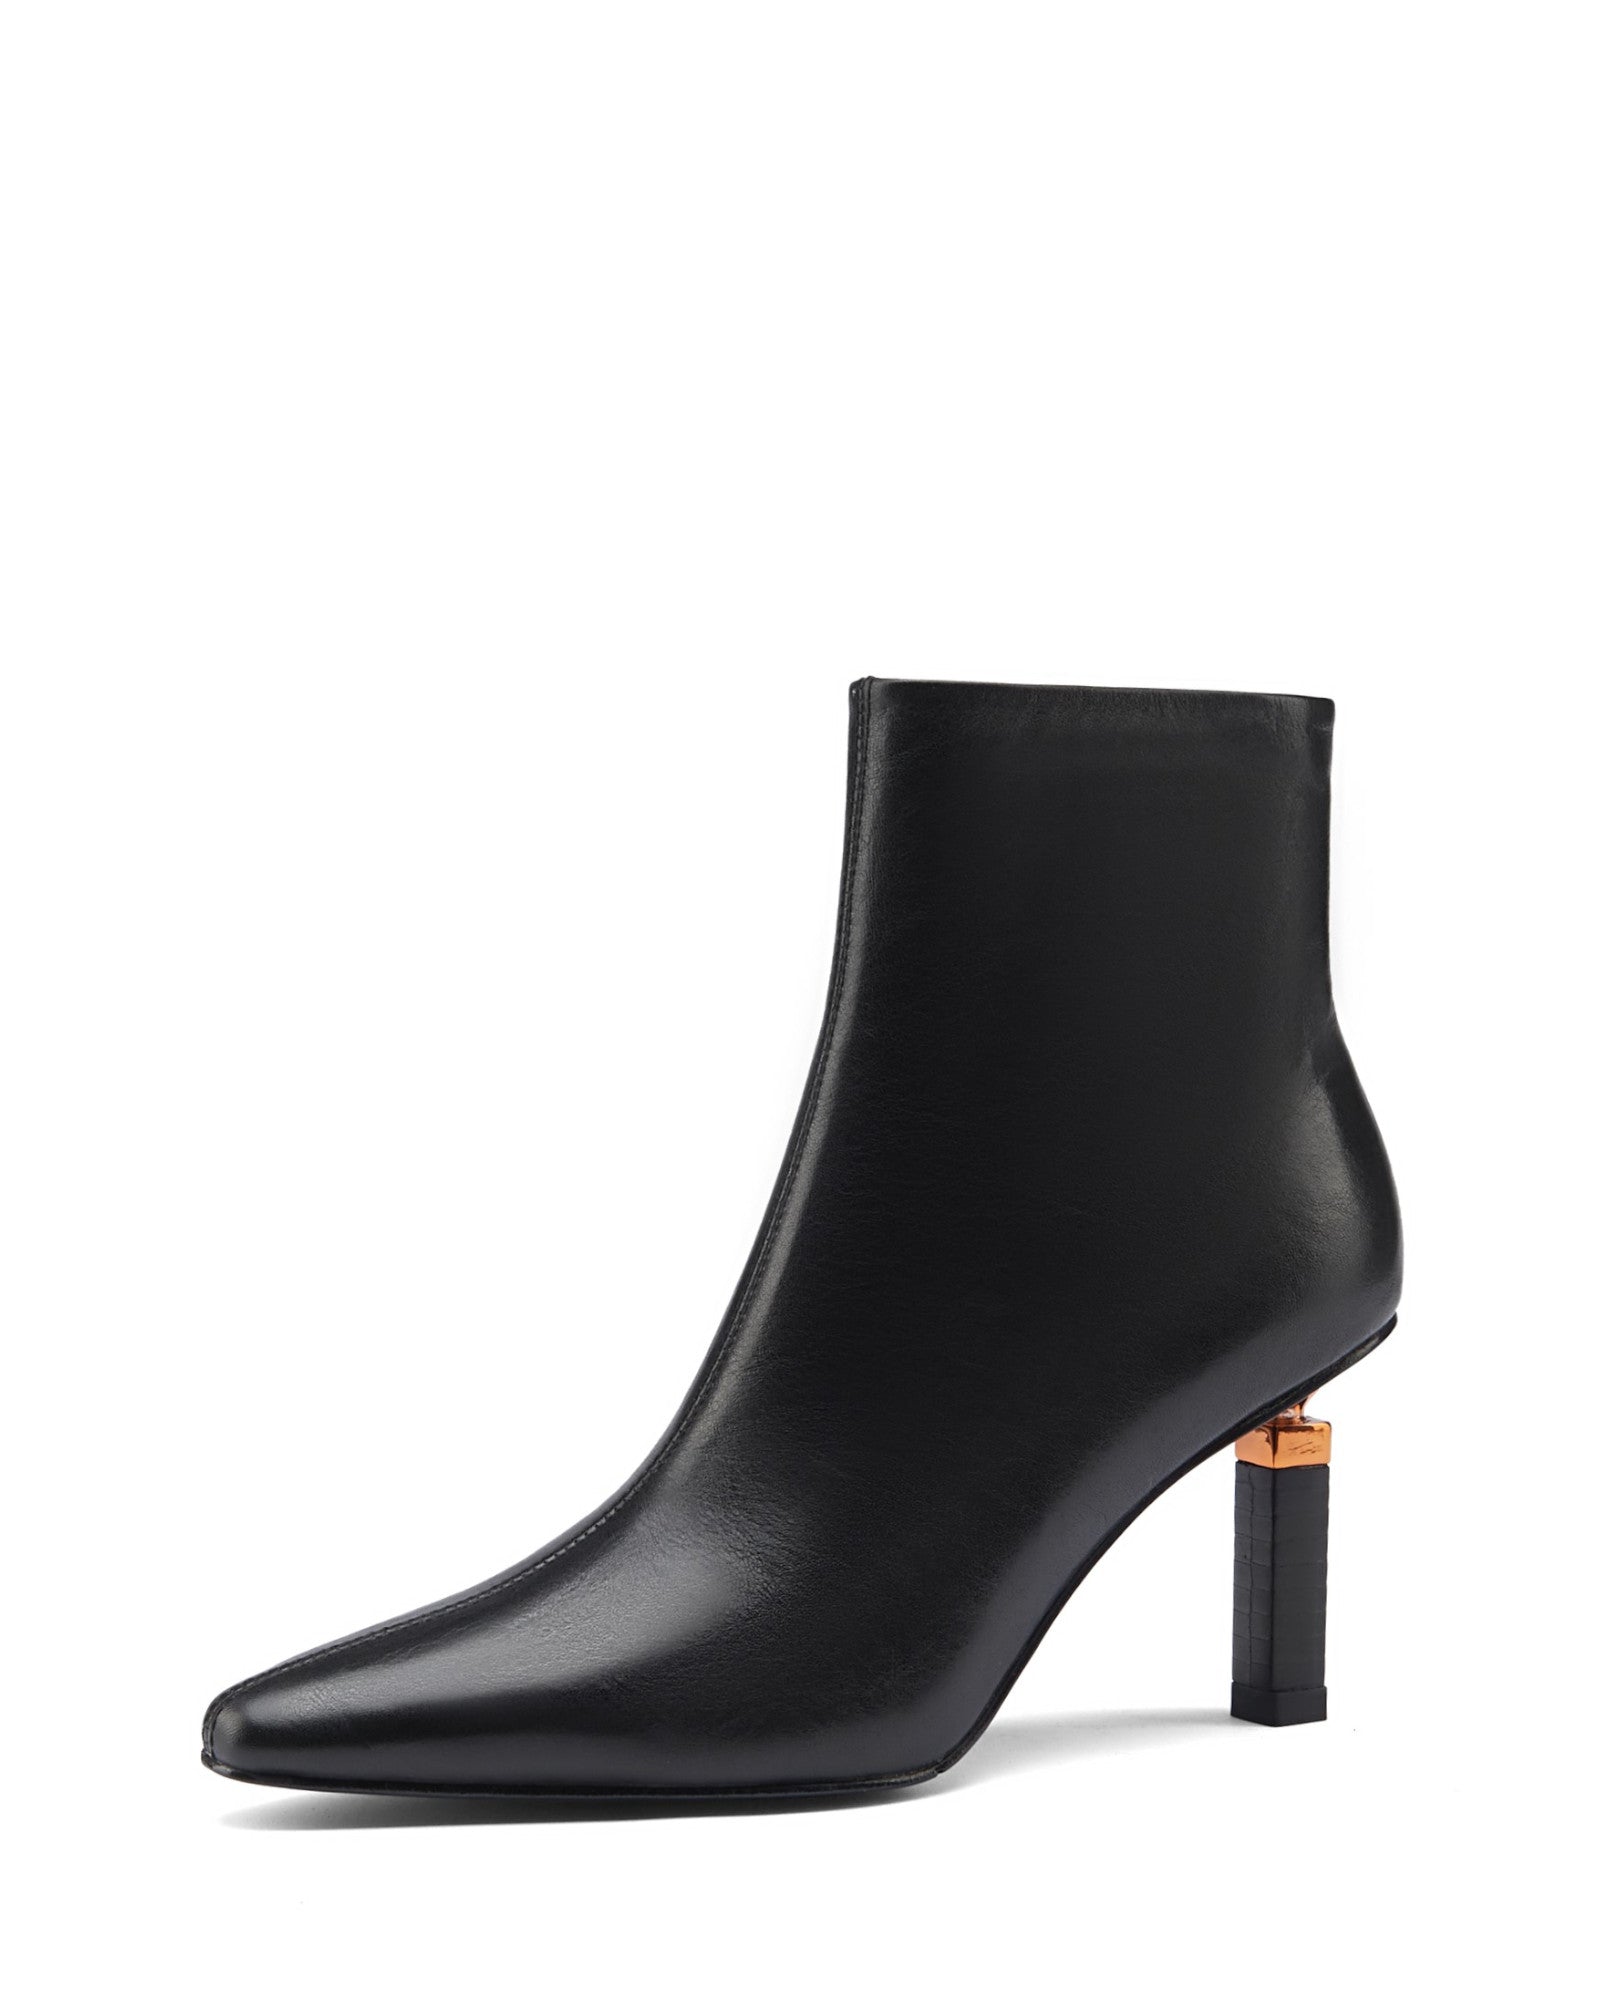 Jene-cube-heeled-boots-black-leather